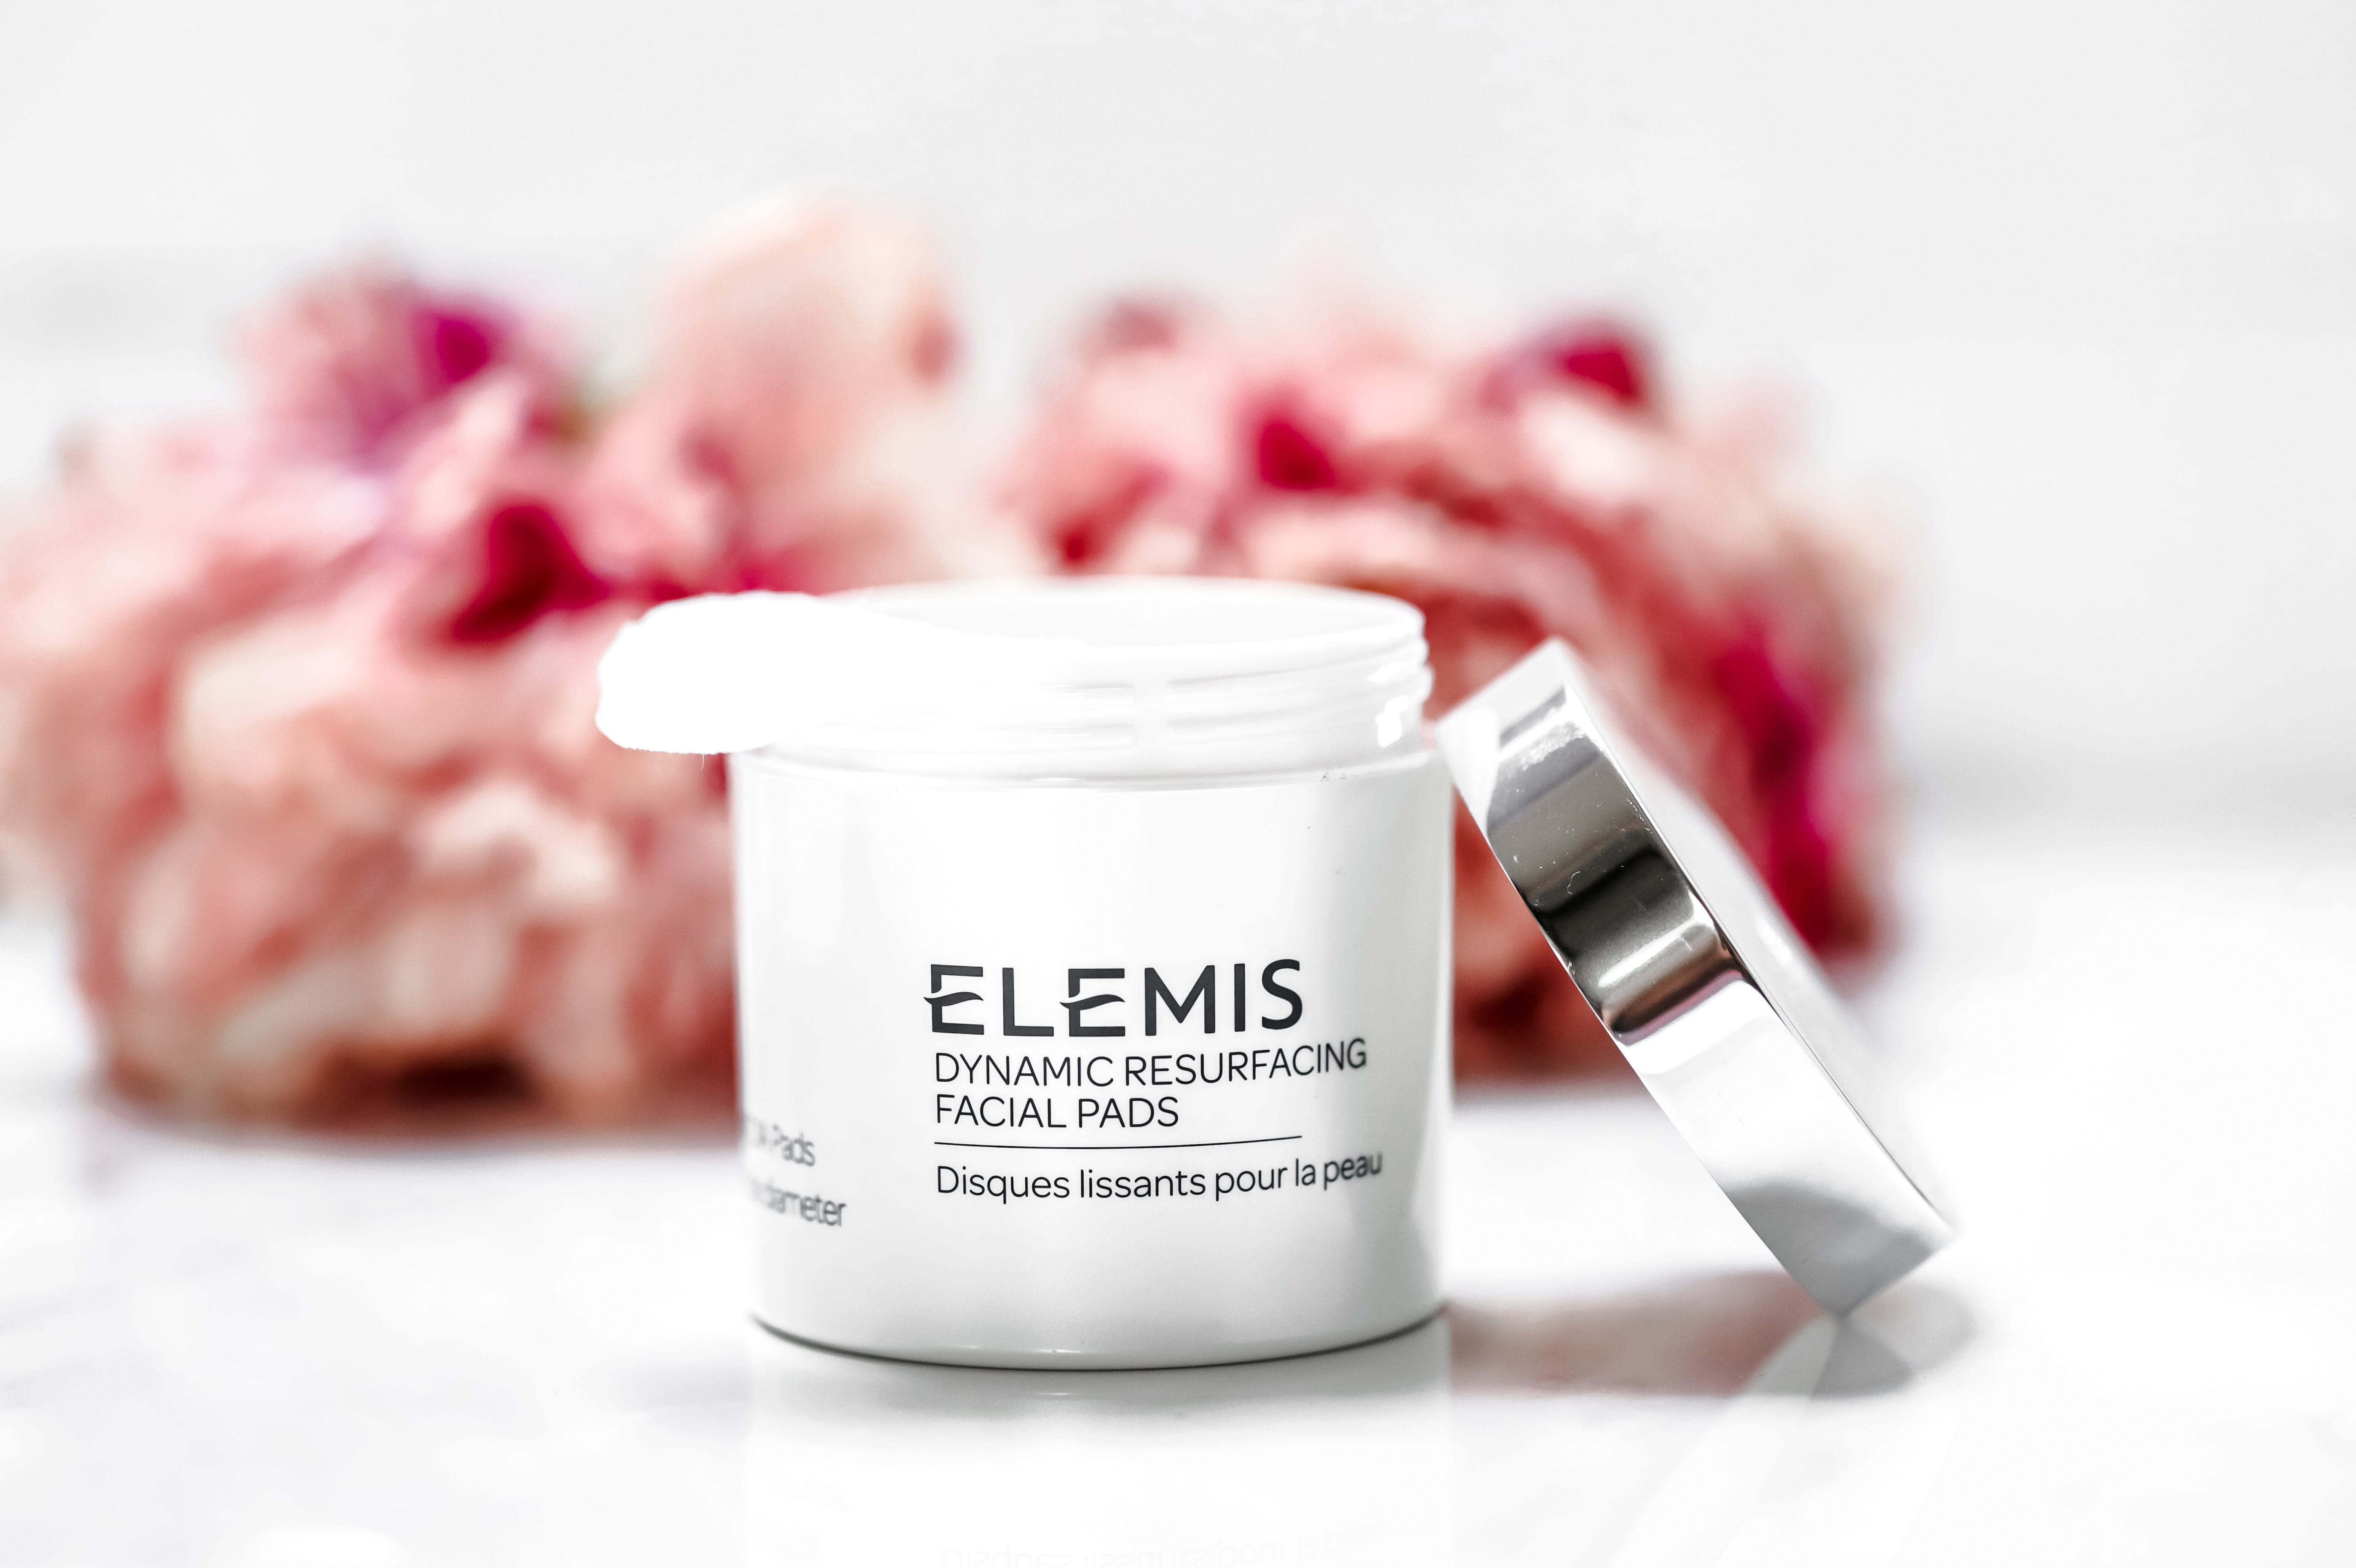 Baume démaquillant Elemis VS The Body Shop, lequel choisir pour une peau  propre et apaisée ?